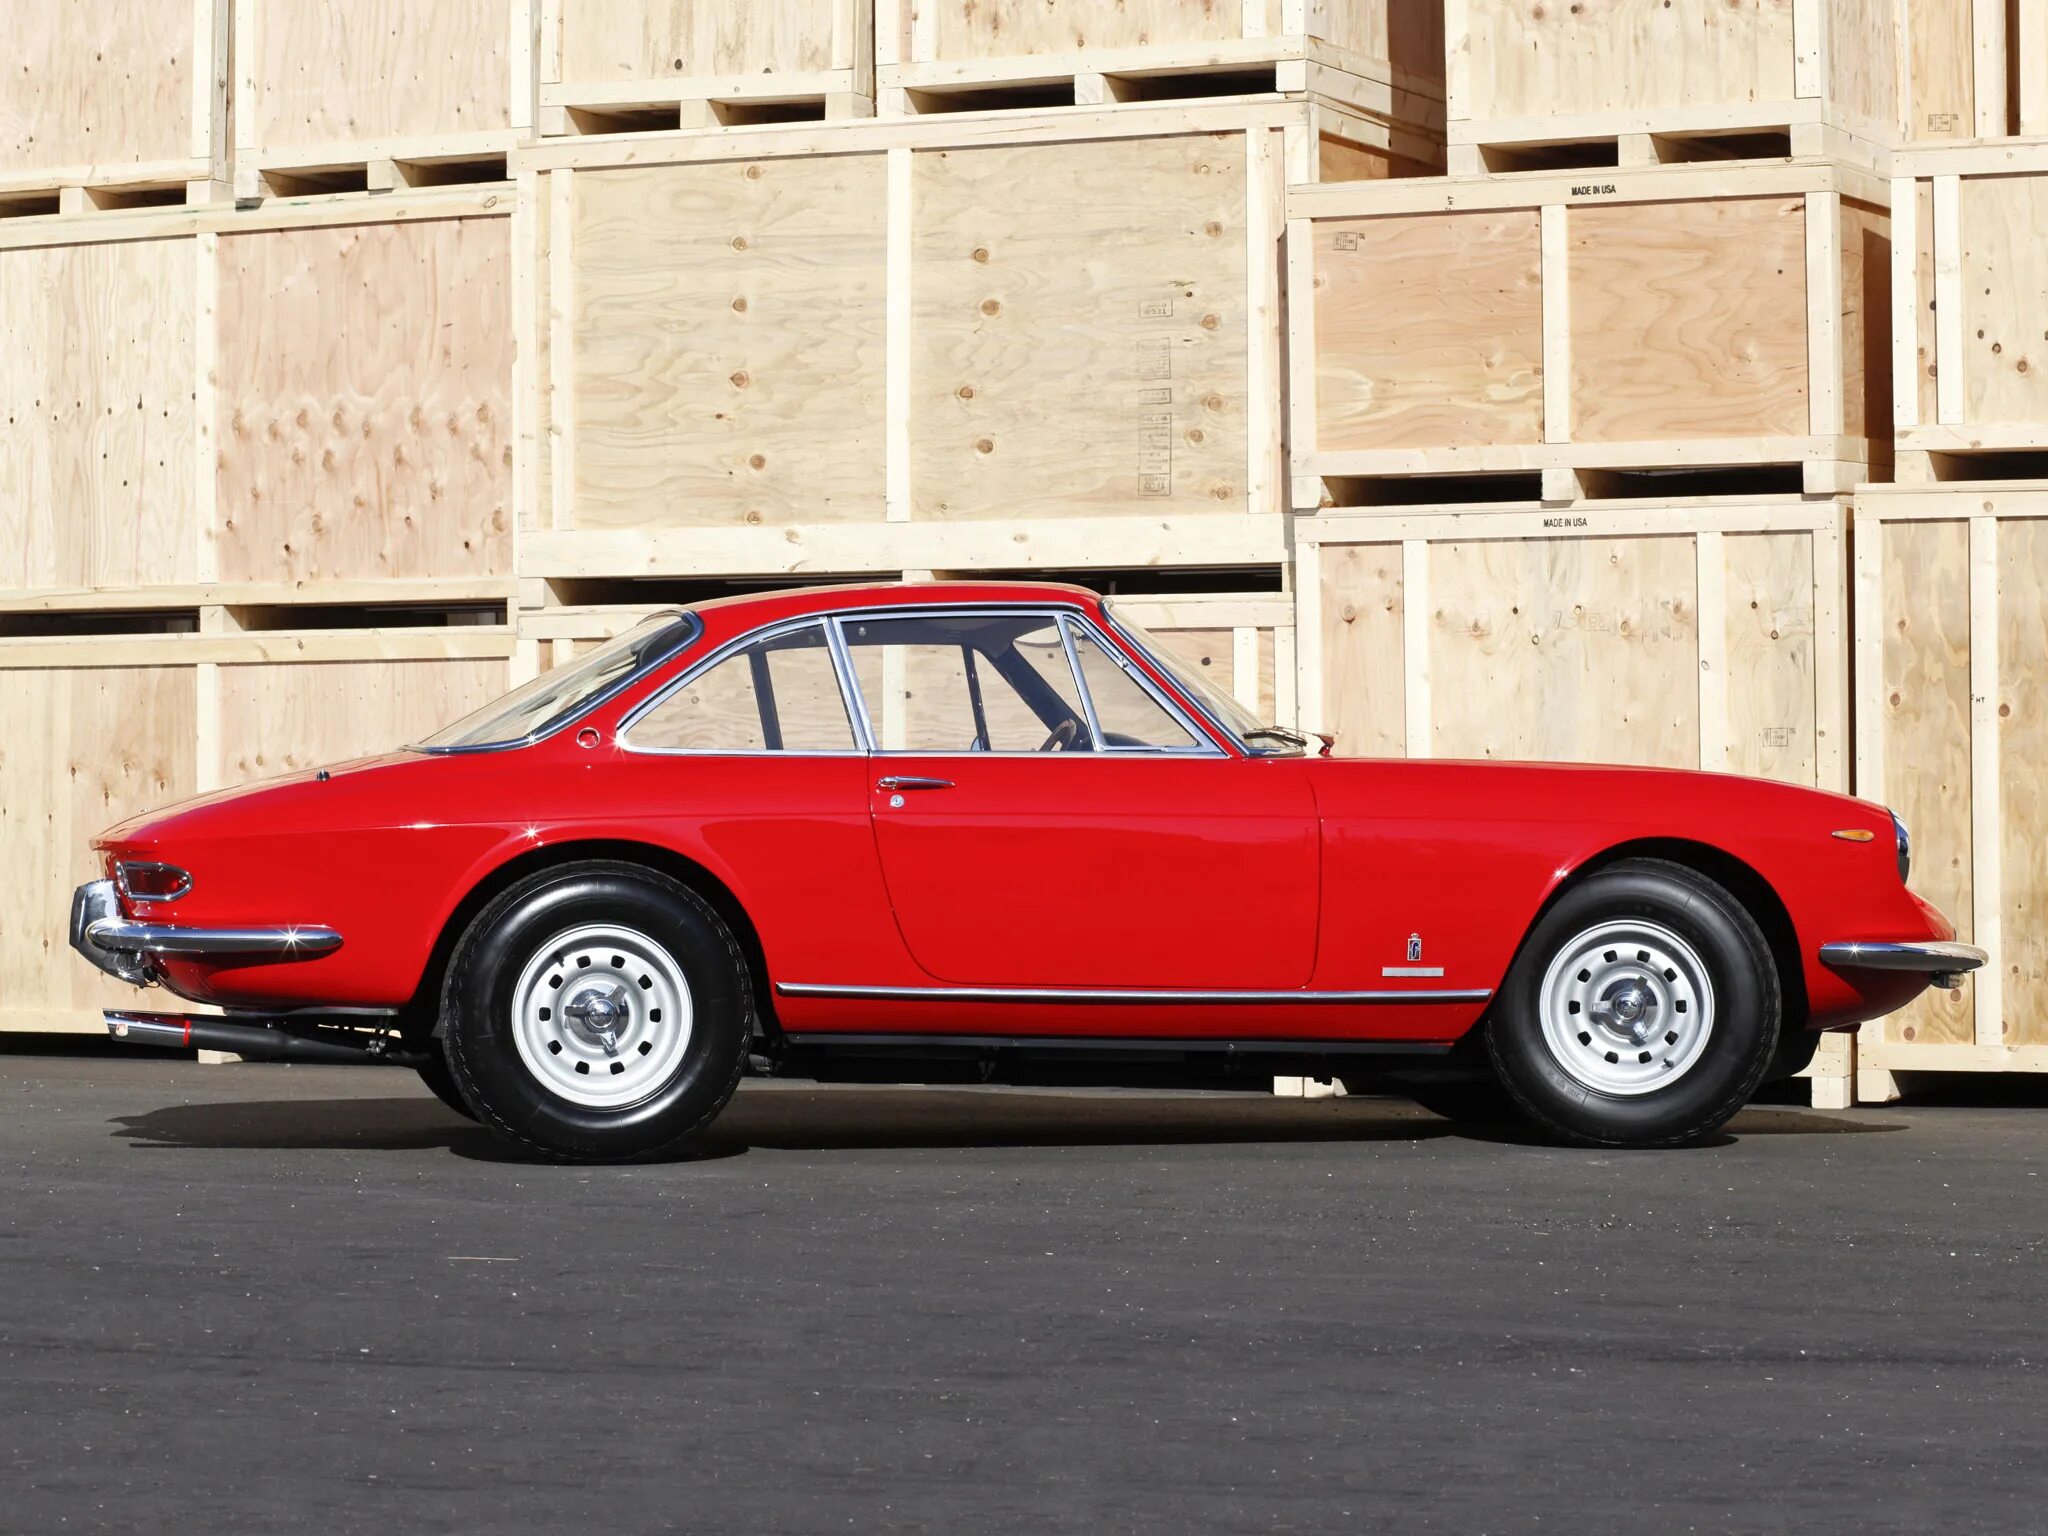 Ferrari 365. Ferrari 365 GTC 1968. Ferrari 365 GTC. Ferrari 365 1968. Ferrari Ferrari 365 1968.